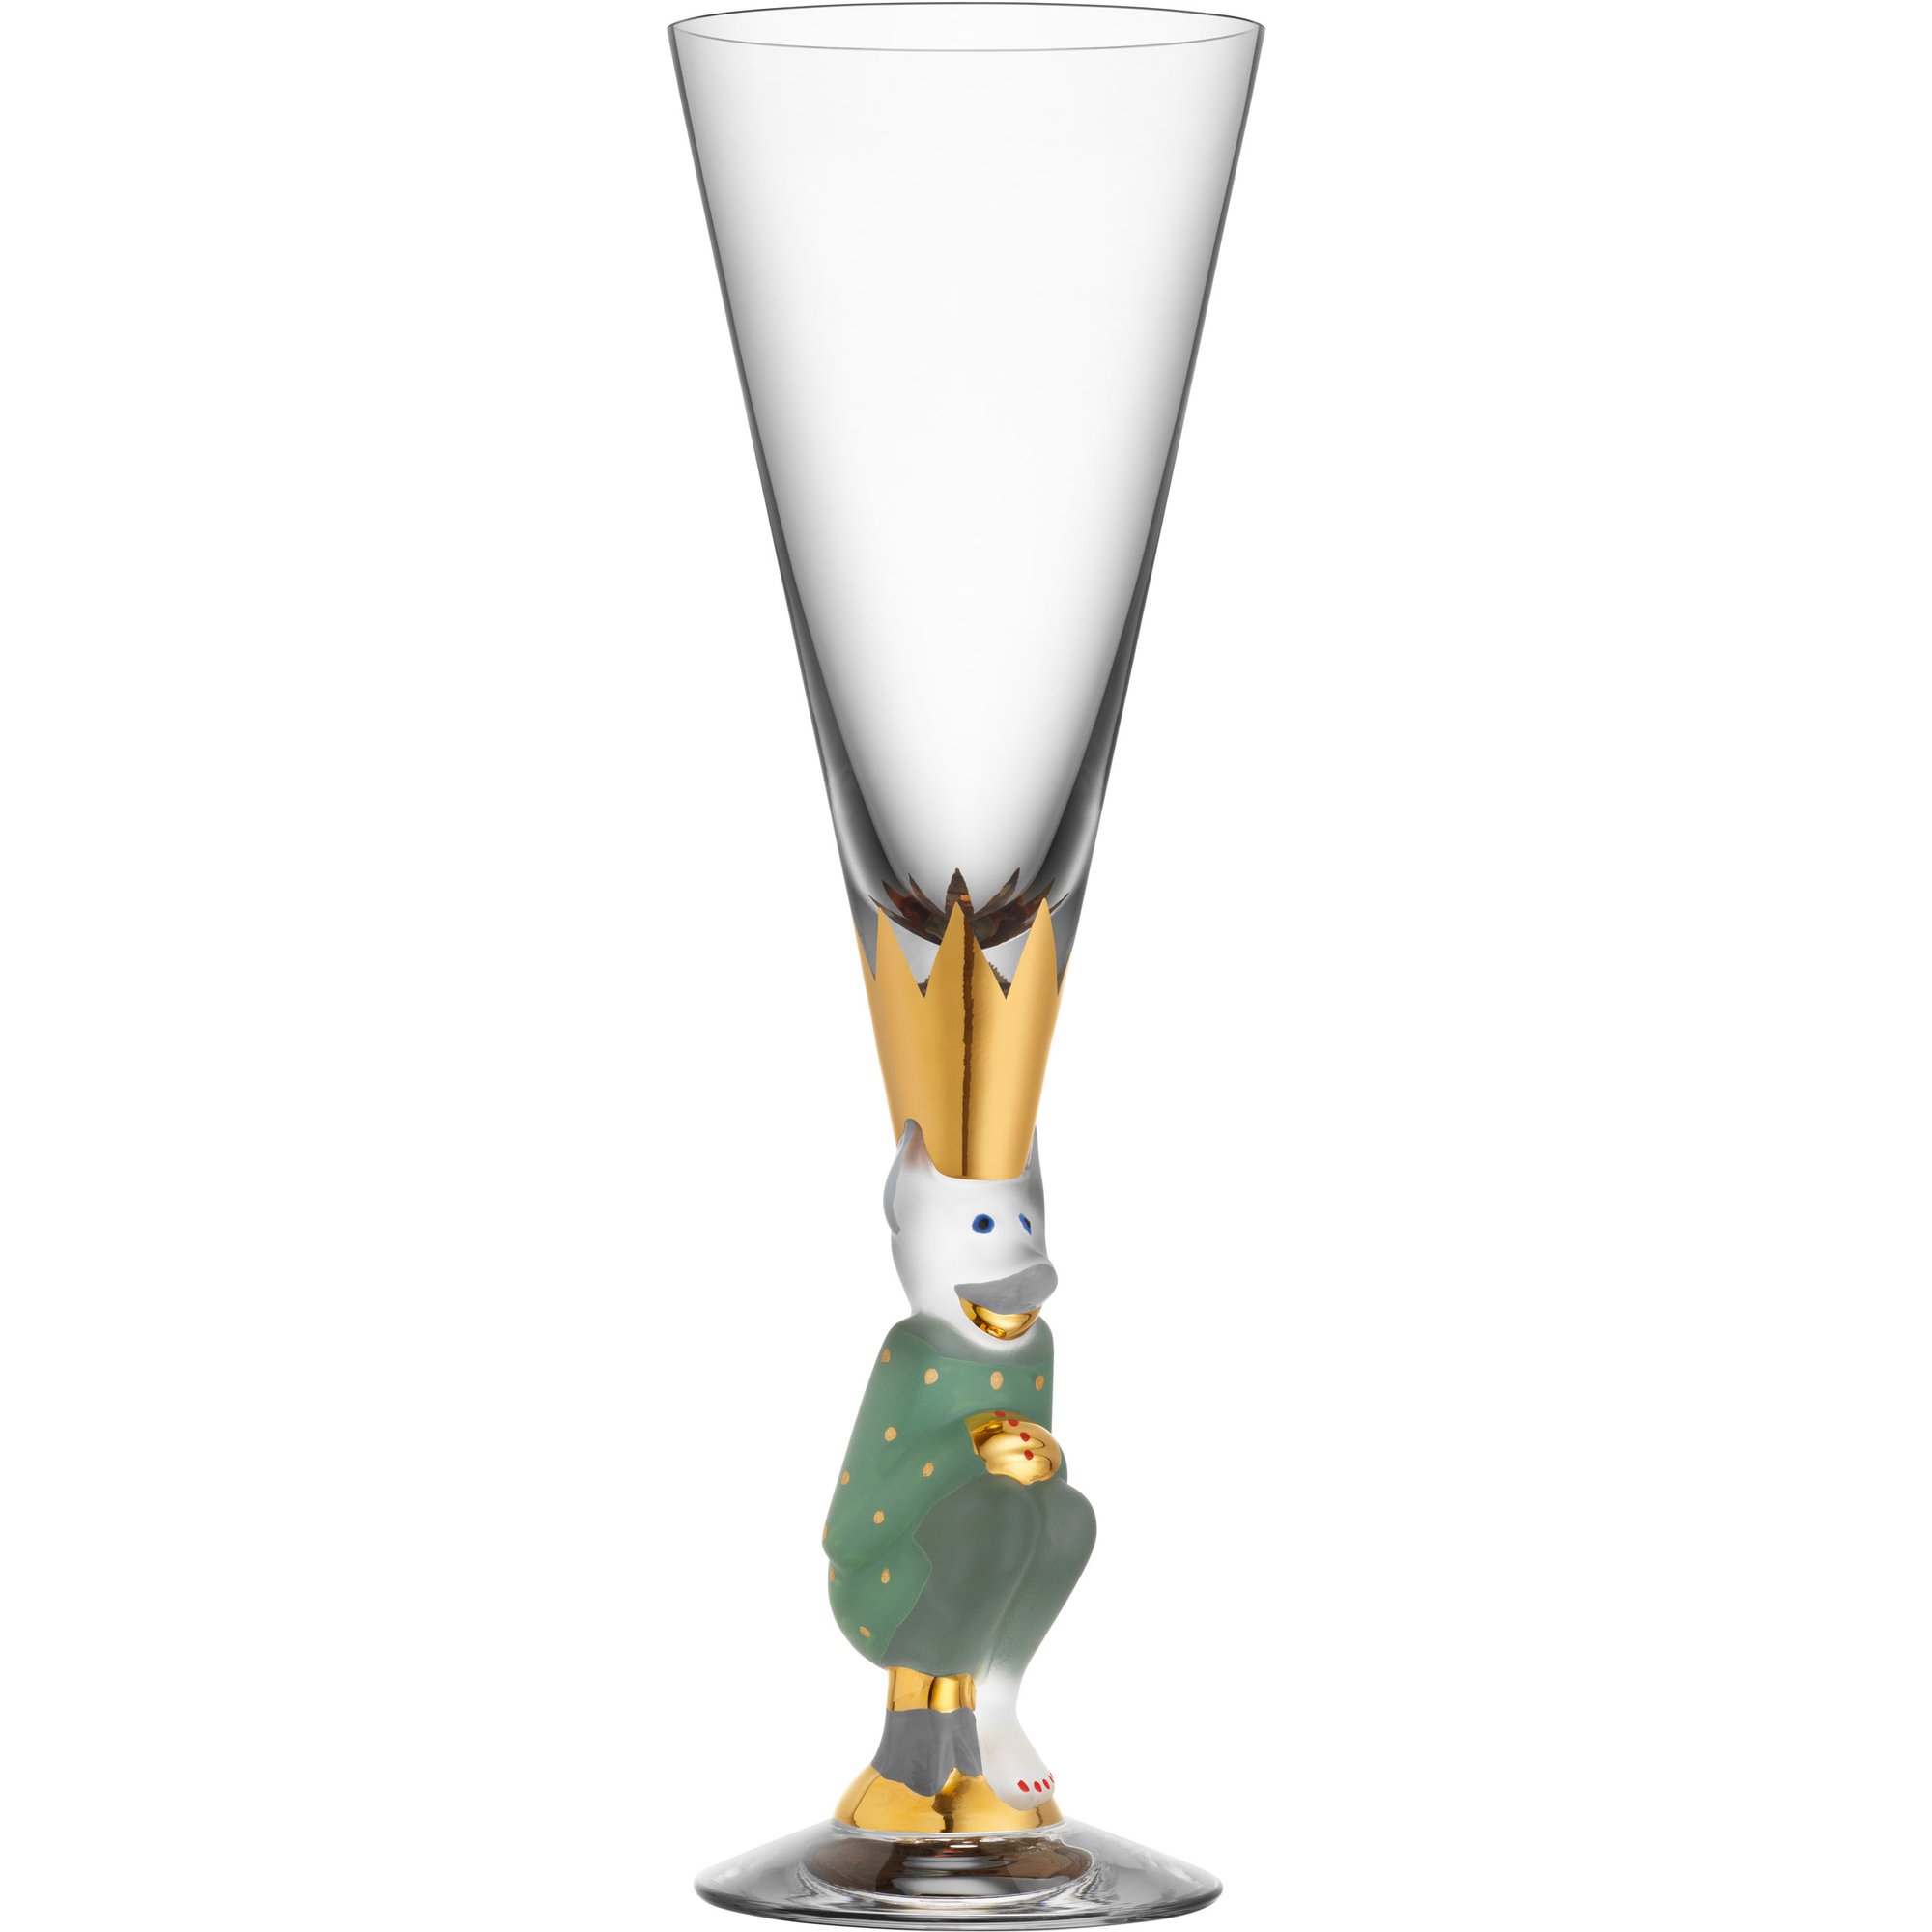 2: Orrefors The Sparkling Devil Champagneglas 19 cl, forrest green